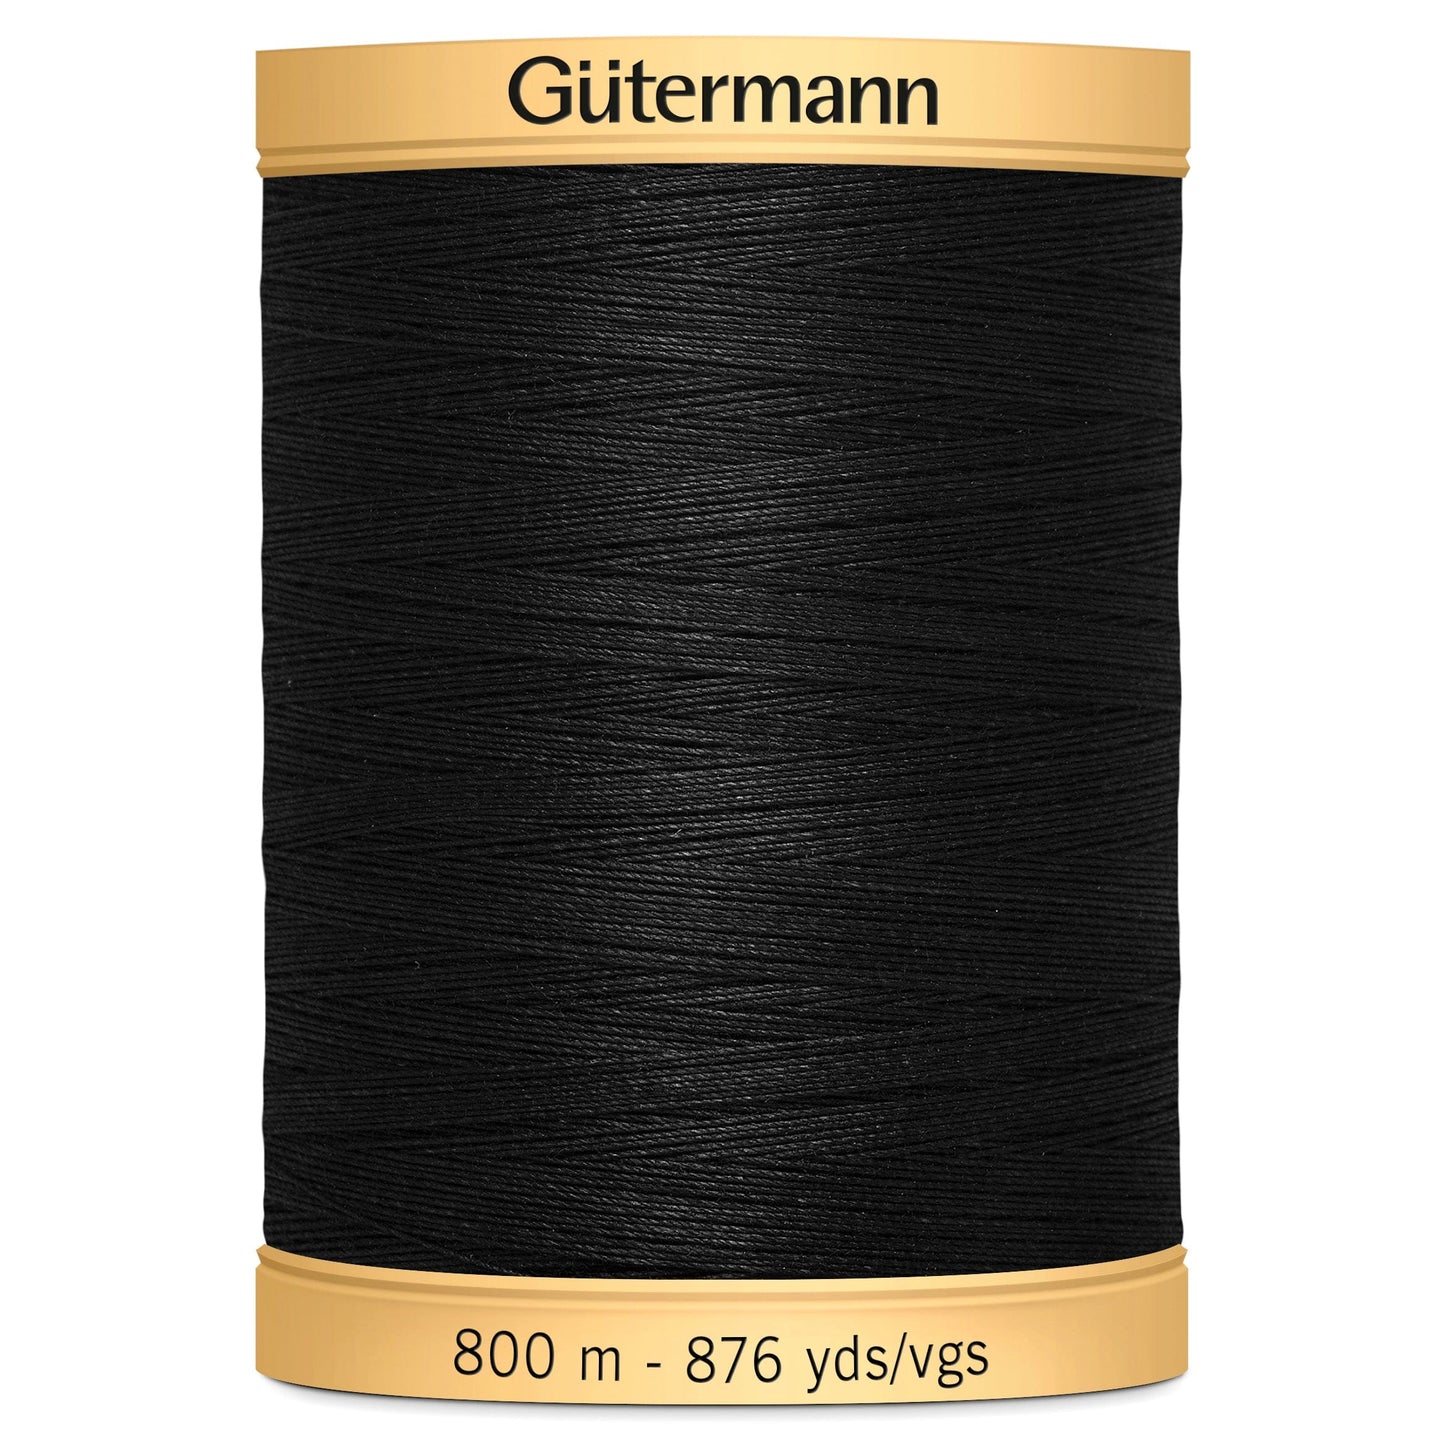 Gutermann Cotton Thread 800M Colour 5201 (Black)